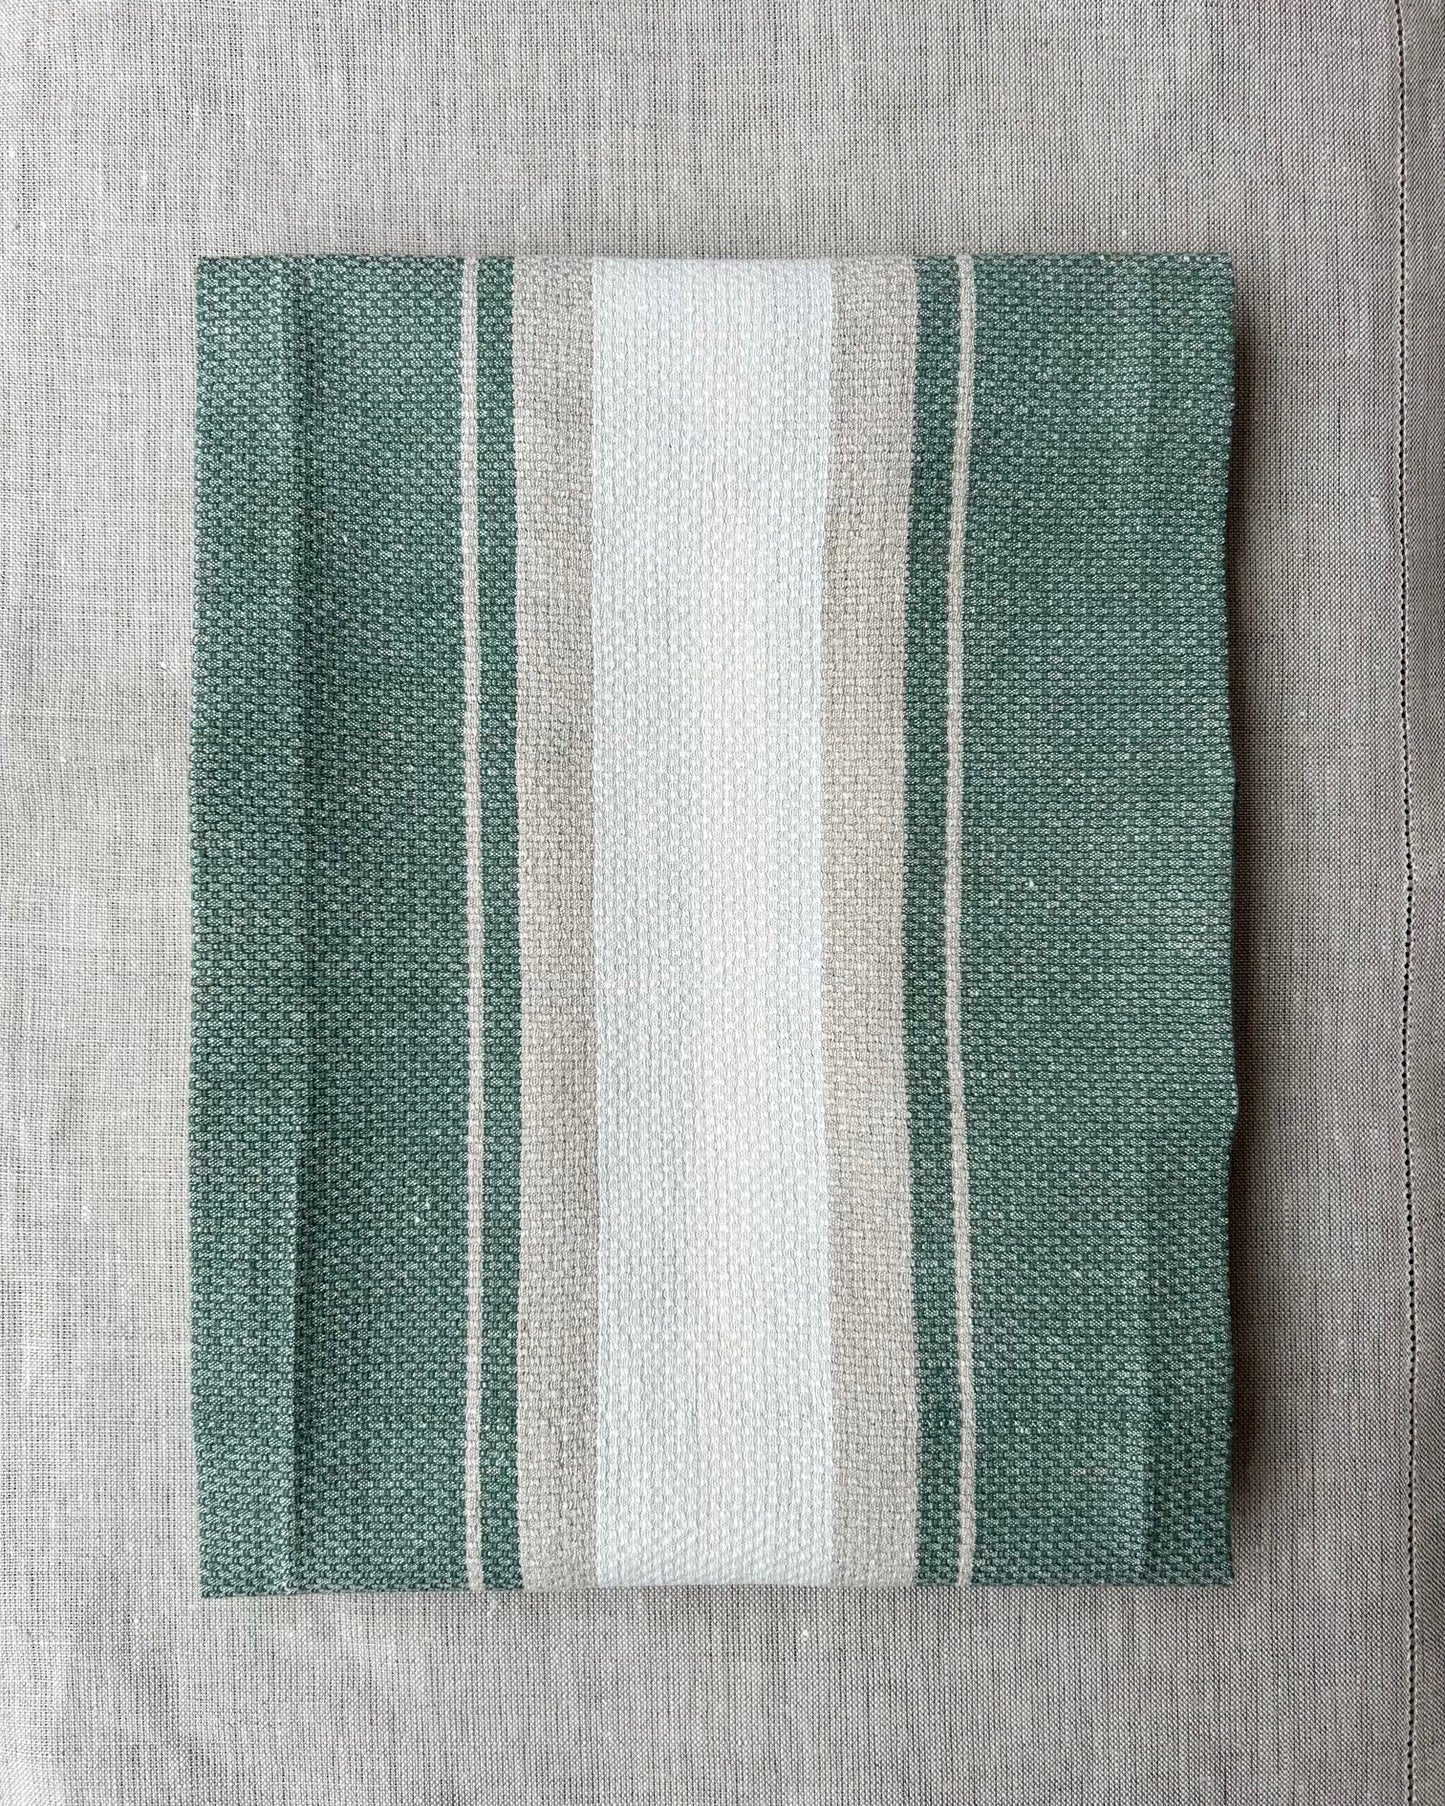 Tea Towel (Linen) "Working Kitchen Towel - Green"